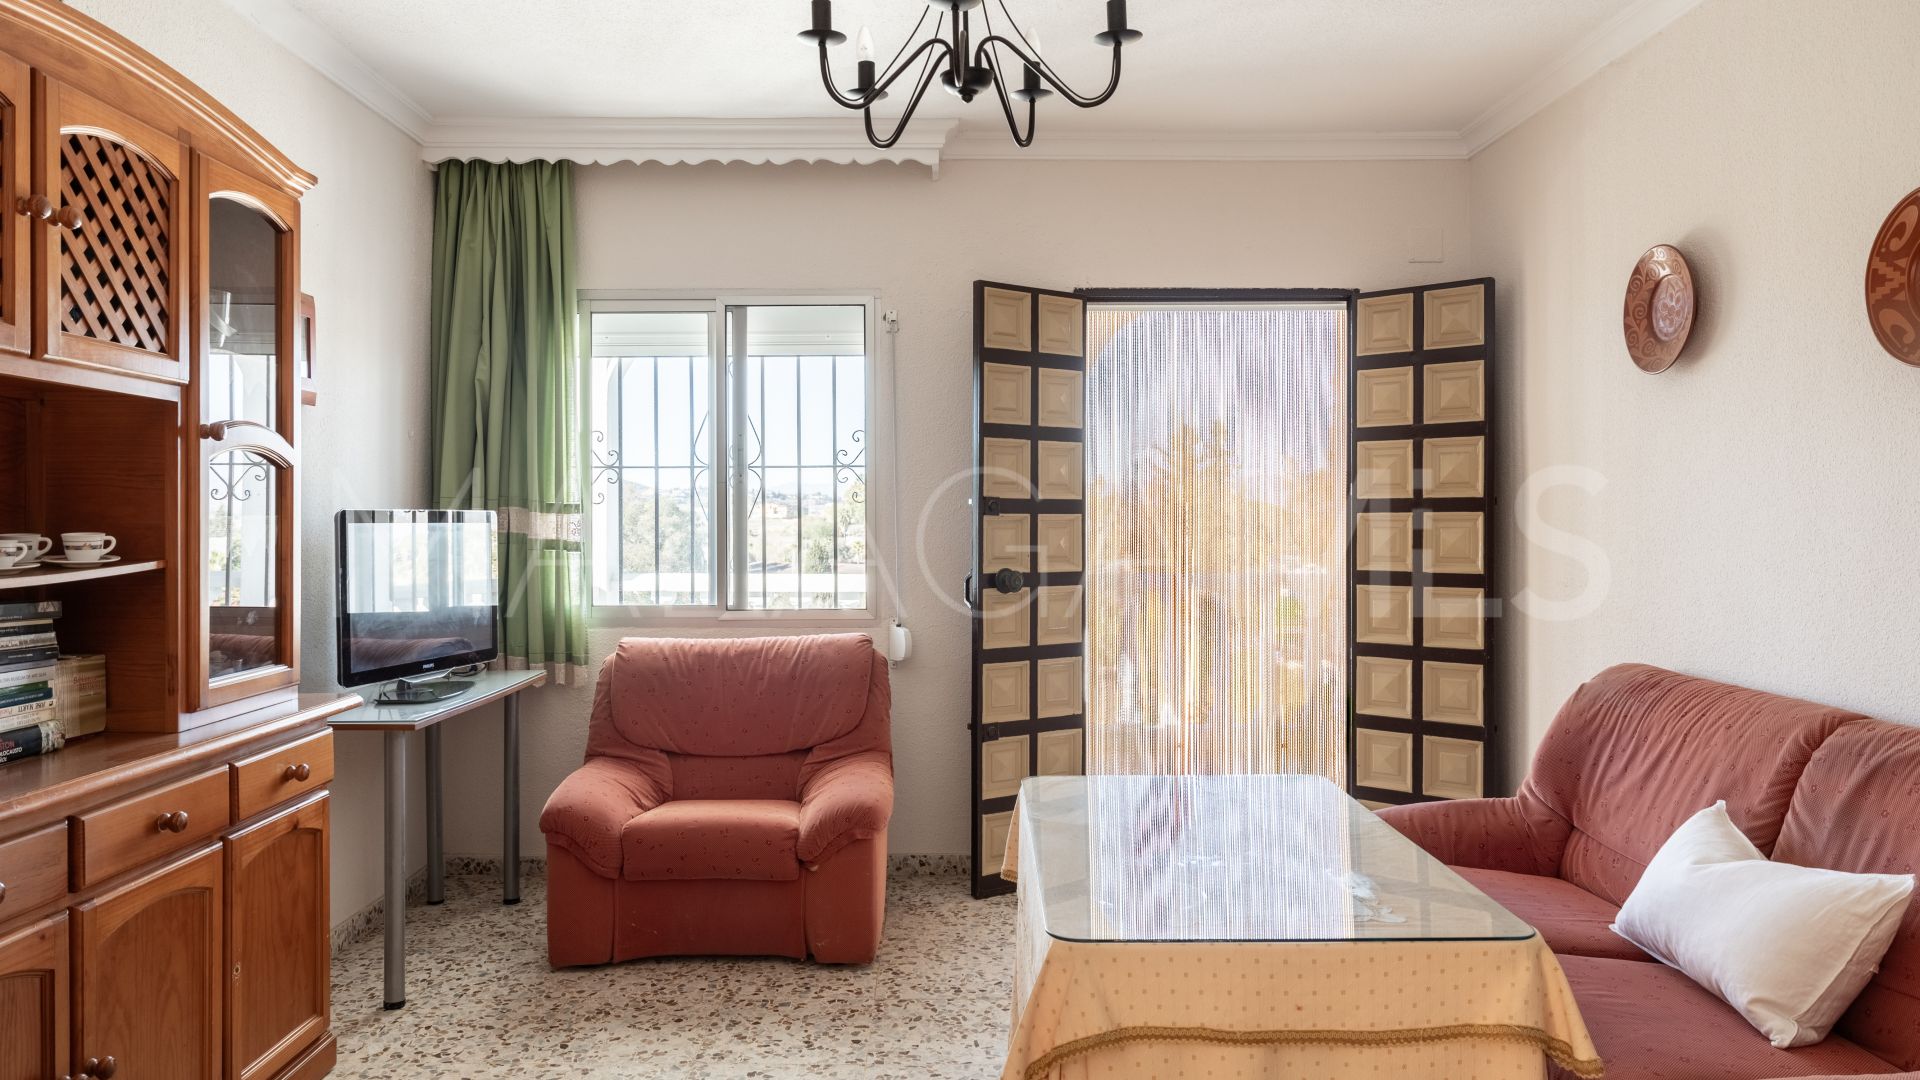 For sale 3 bedrooms finca in Alhaurin de la Torre